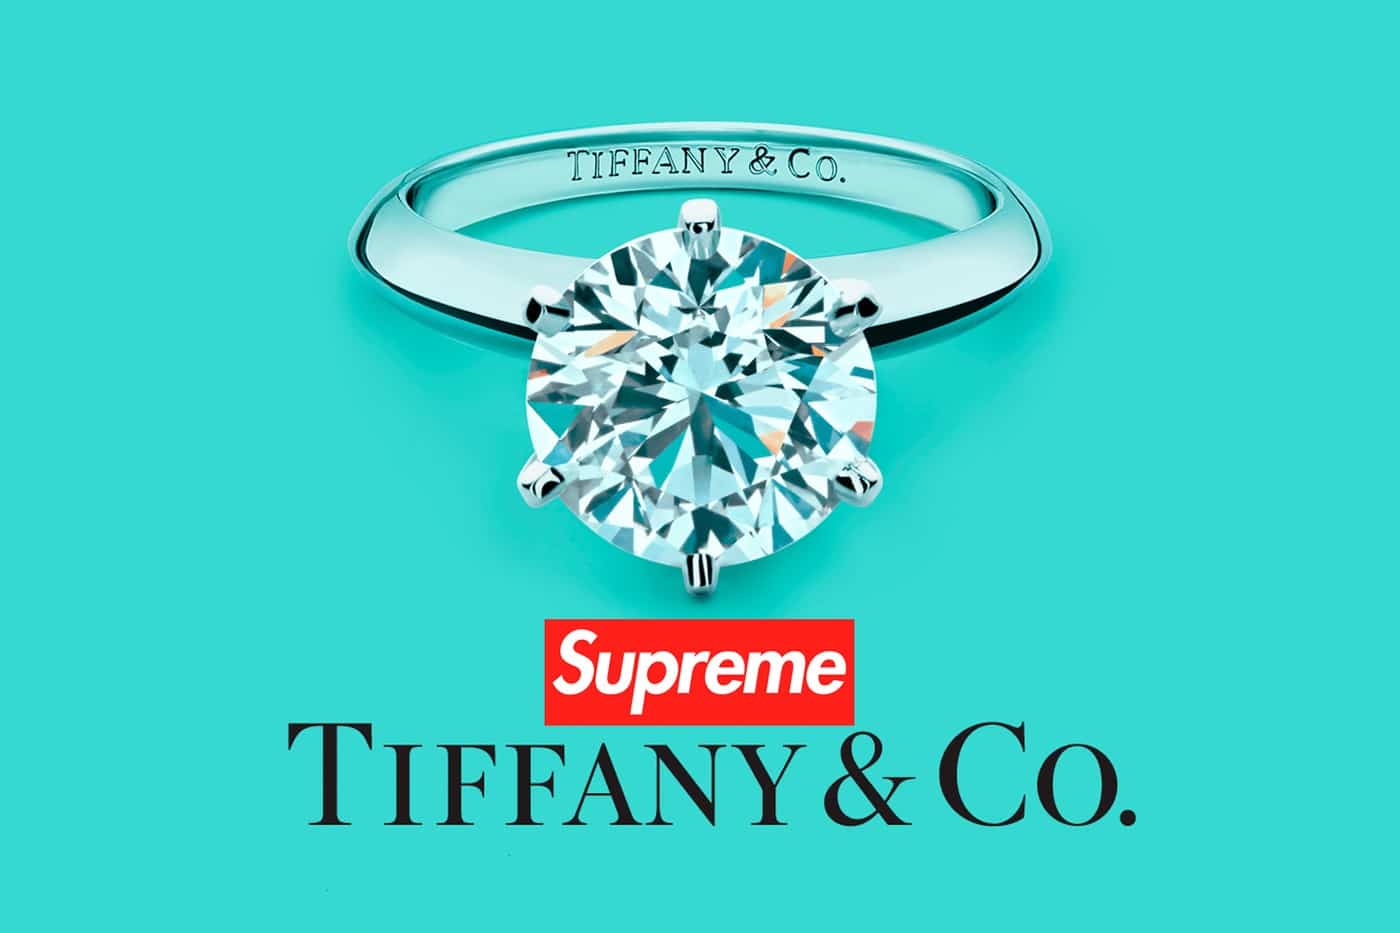 Tiffany & Co hợp tác với Supreme cho bộ sưu tập mới nhất - 5